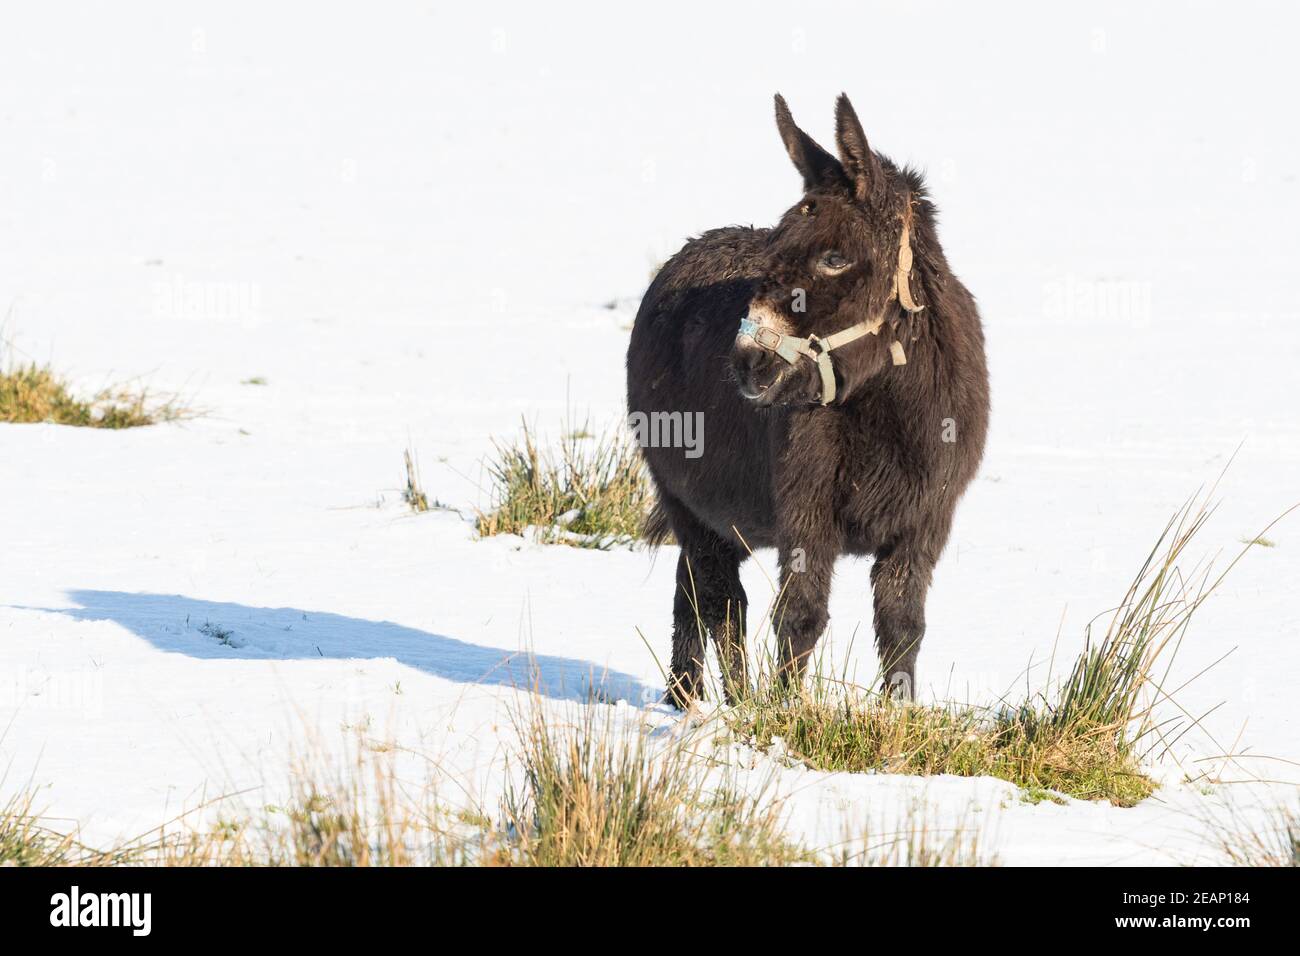 Gartness, Stirling, Écosse, Royaume-Uni. 10 février 2021. Météo au Royaume-Uni - un âne mangeant des touffes d'herbe dans un champ couvert de neige blanche par ailleurs crédit: Kay Roxby/Alamy Live News Banque D'Images